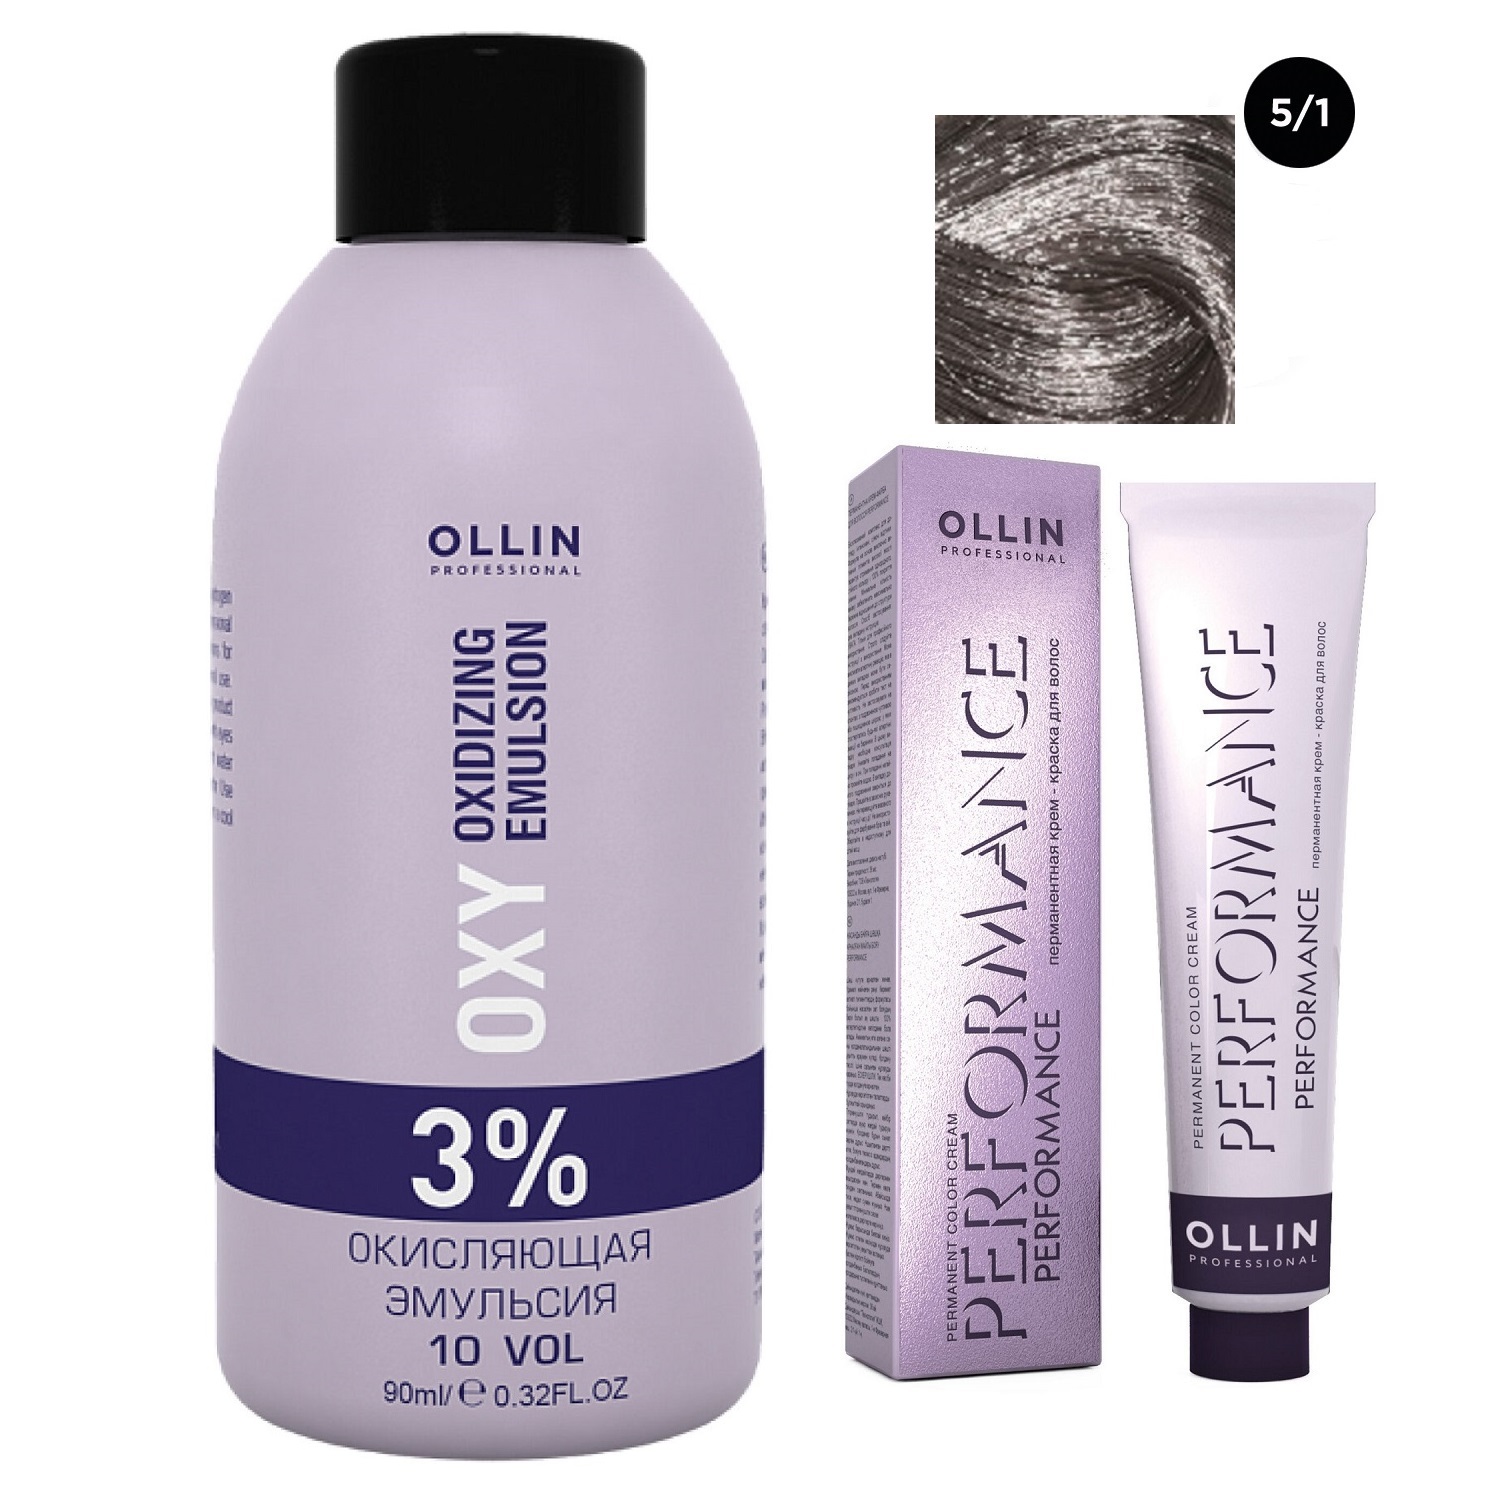 Ollin Professional Набор Перманентная крем-краска для волос Ollin Performance оттенок 5/1 светлый шатен пепельный 60 мл + Окисляющая эмульсия Oxy 3% 90 мл (Ollin Professional, Performance) окисляющая крем эмульсия ollin megapolis 5 5% 75 мл